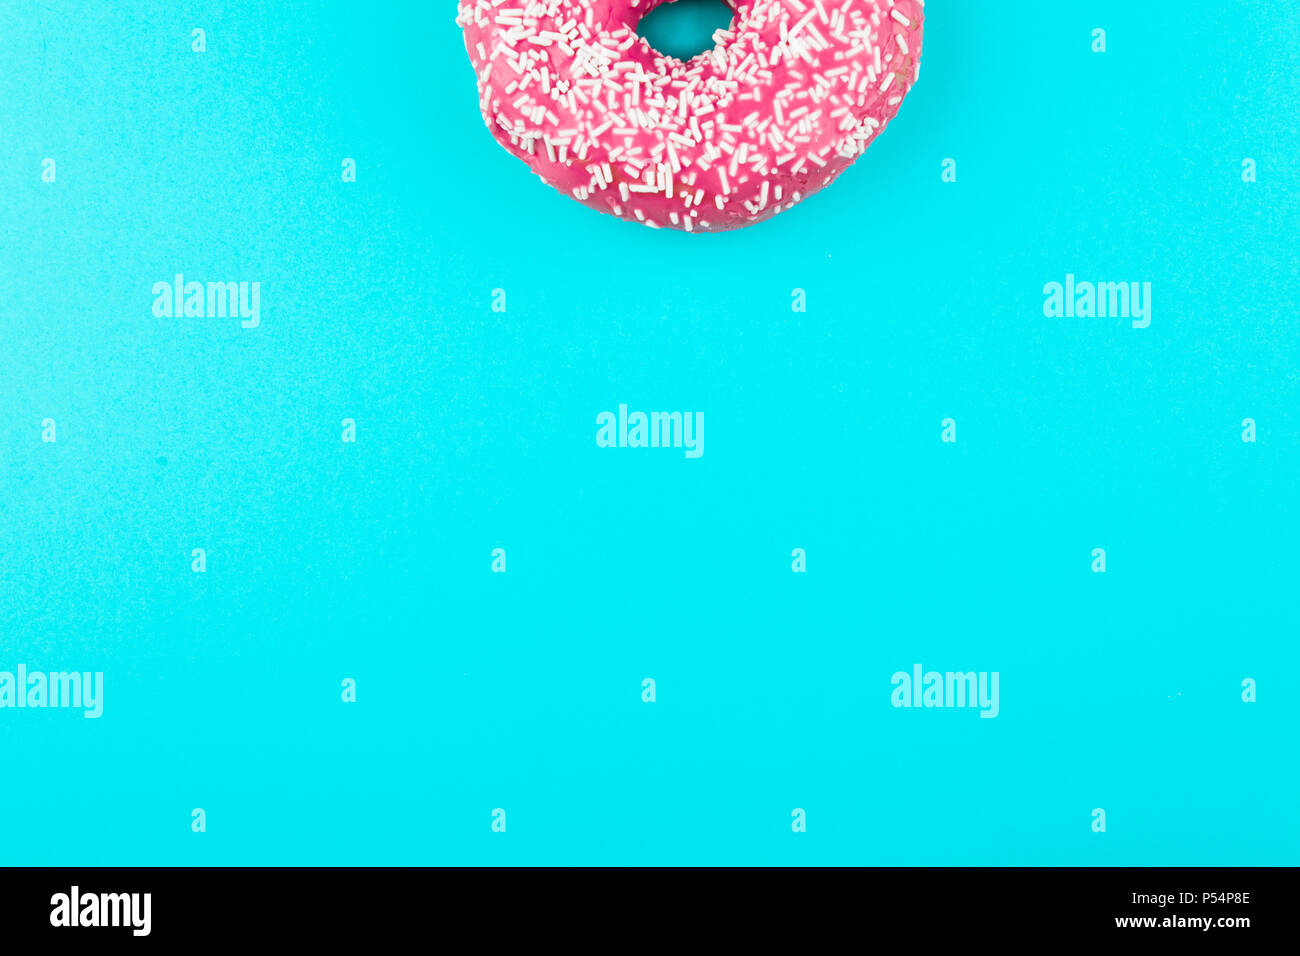 Ein rosa isoliert Donut auf einer Münze Hintergrund Stockfoto